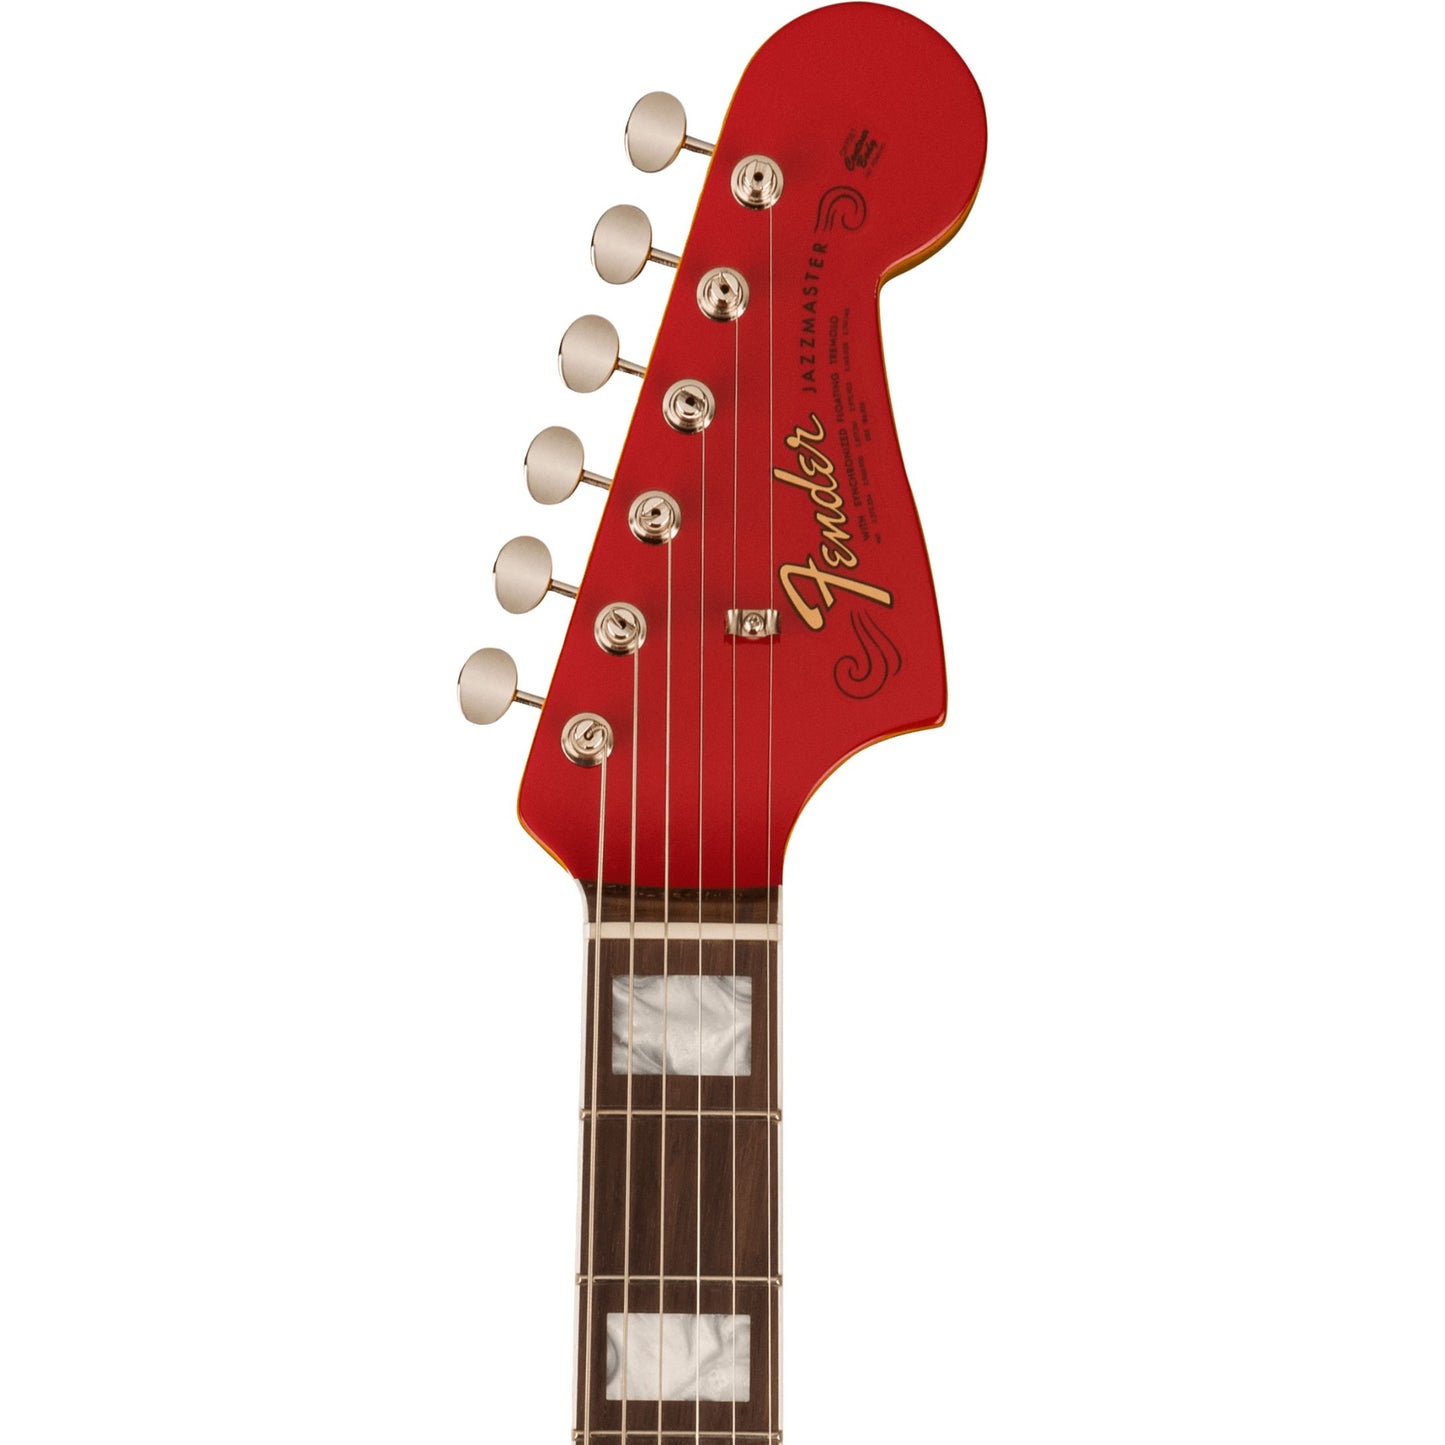 Fender American Vintage II 1966 Jazzmaster in Dakota Red